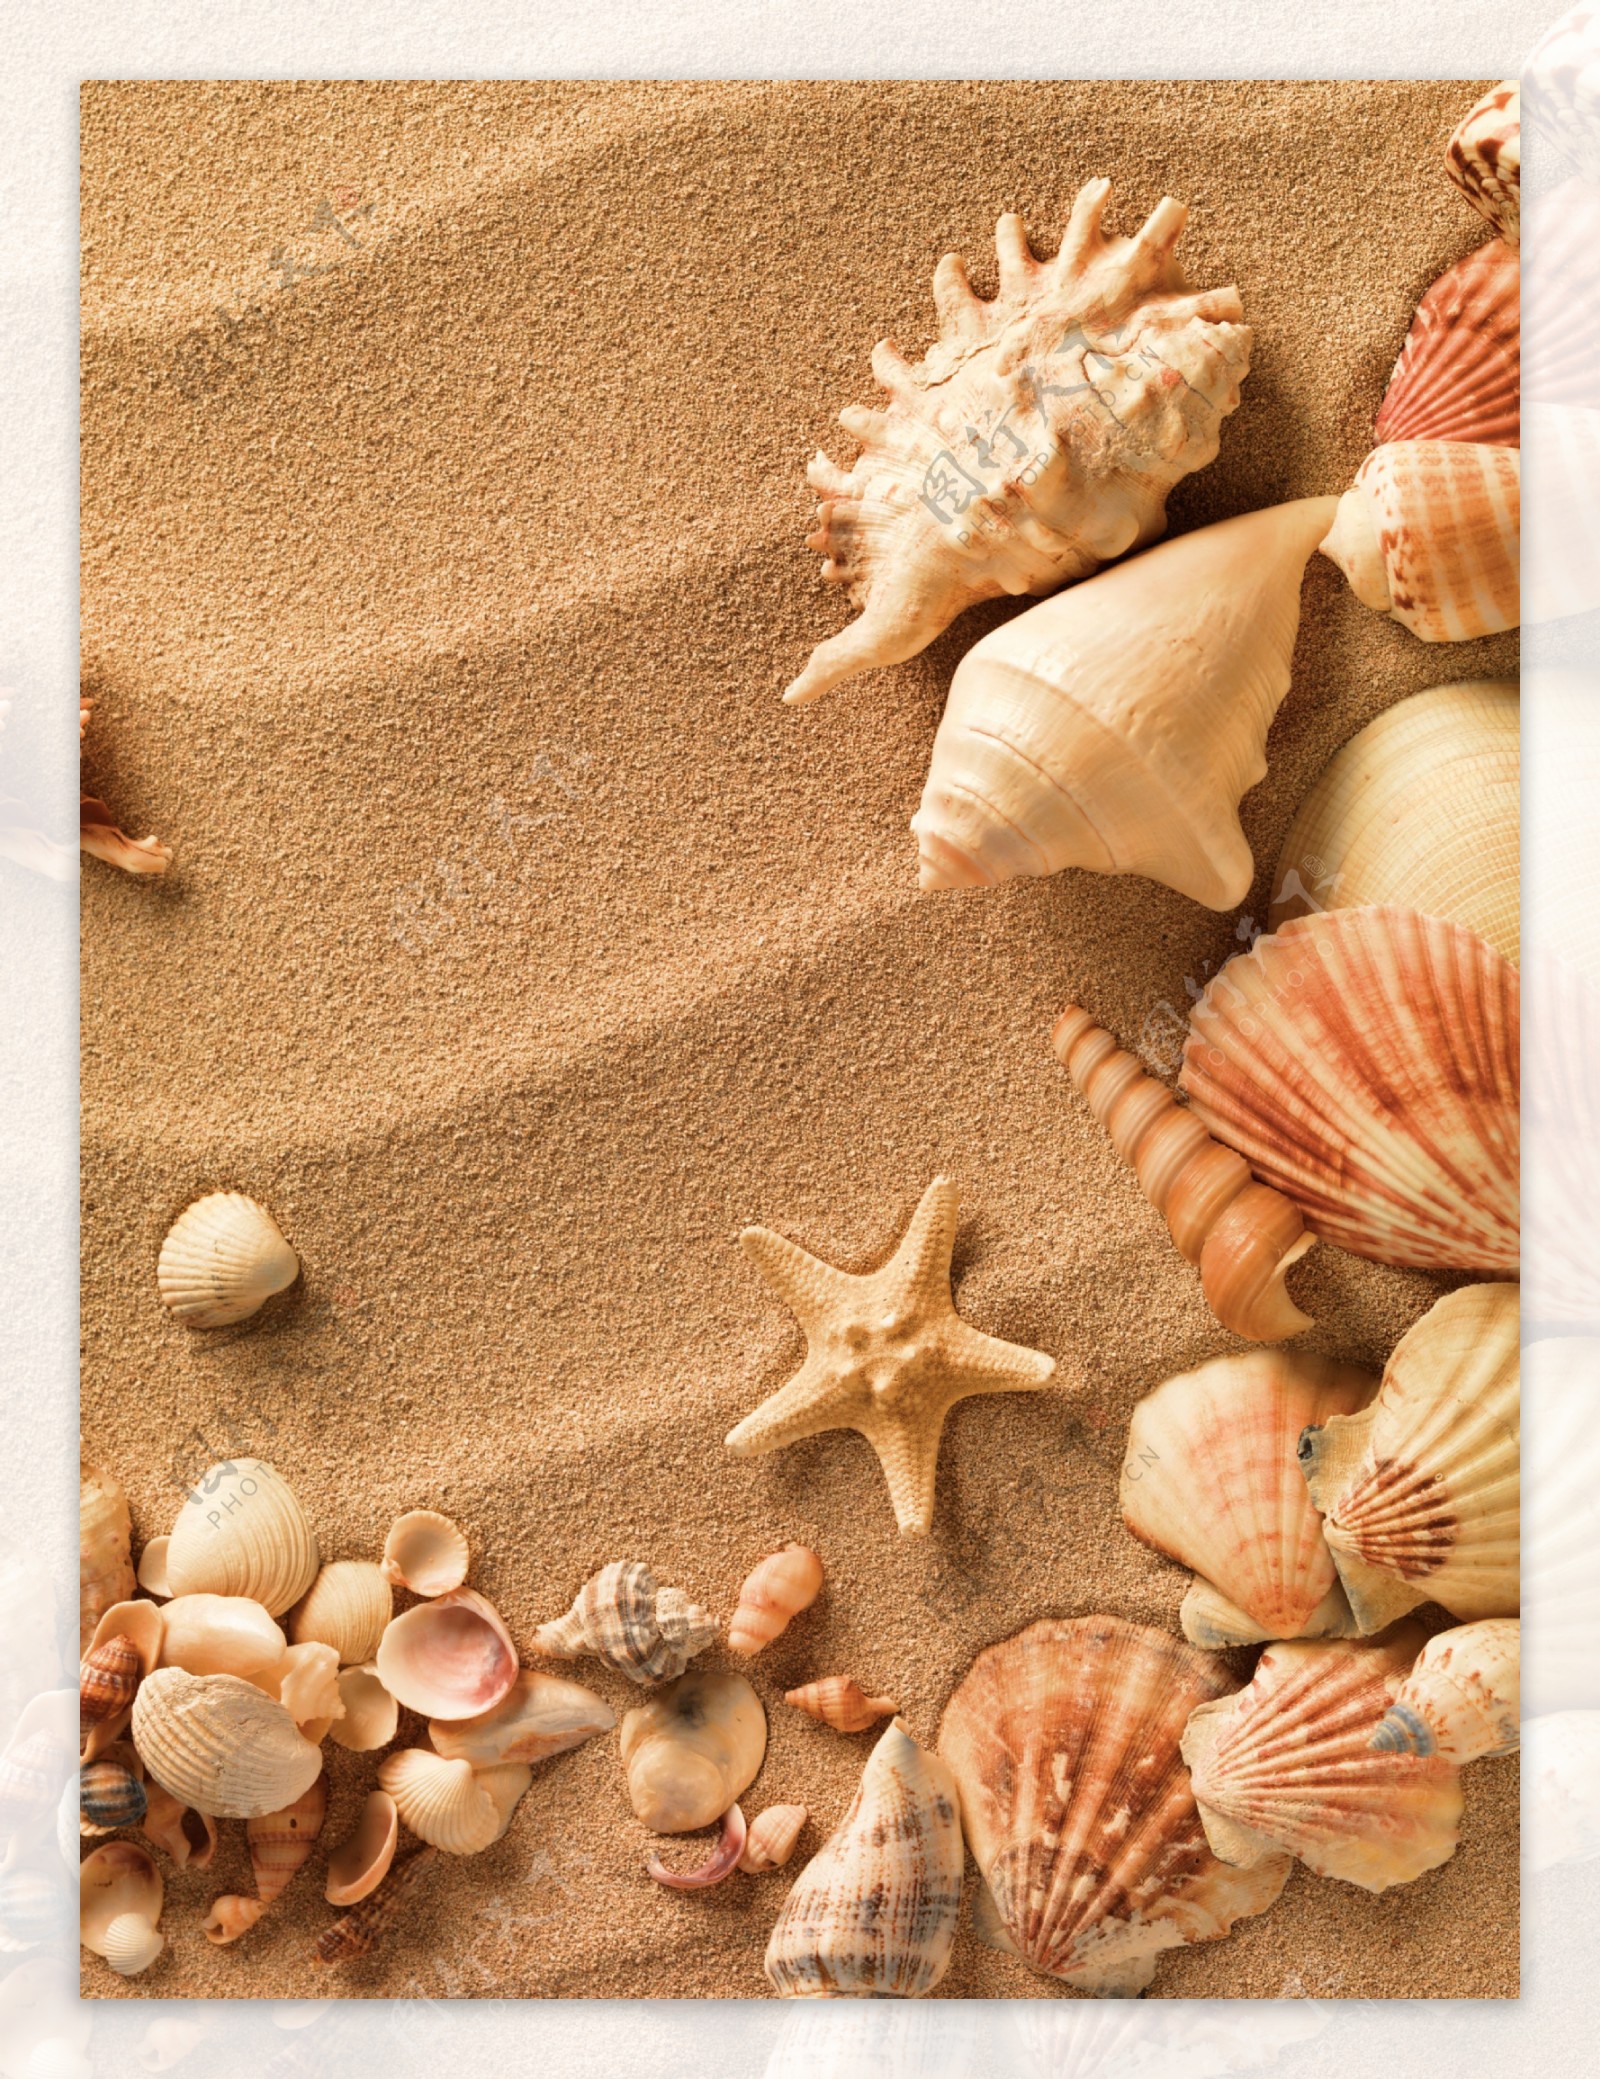 贝壳海螺沙滩海星图片